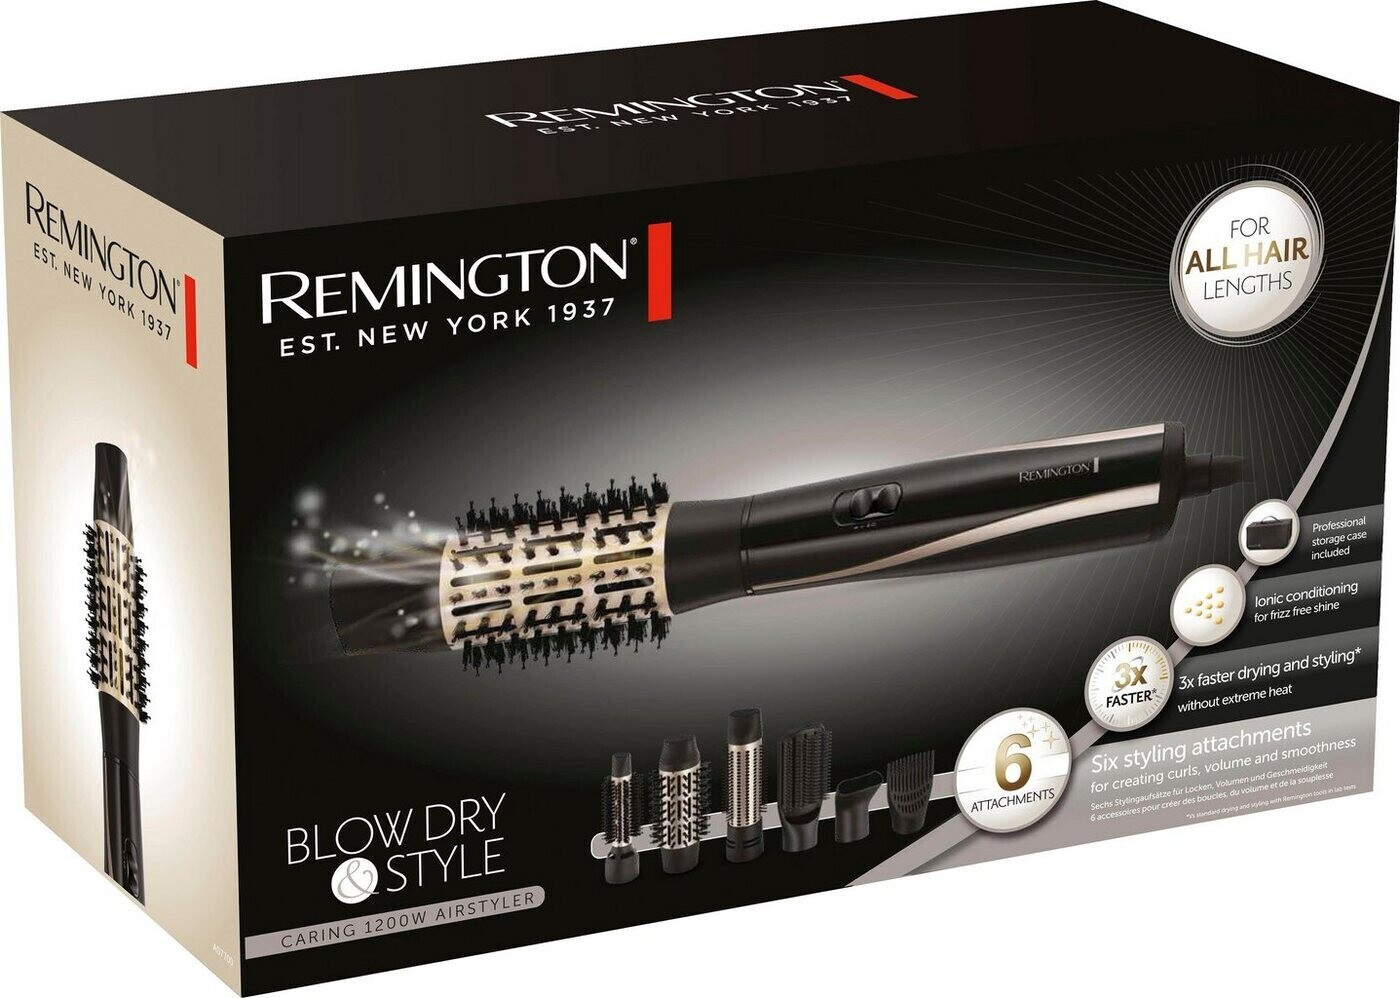 Remington Blow Dry | AS7700 56,99 ab bei Preisvergleich Style & €